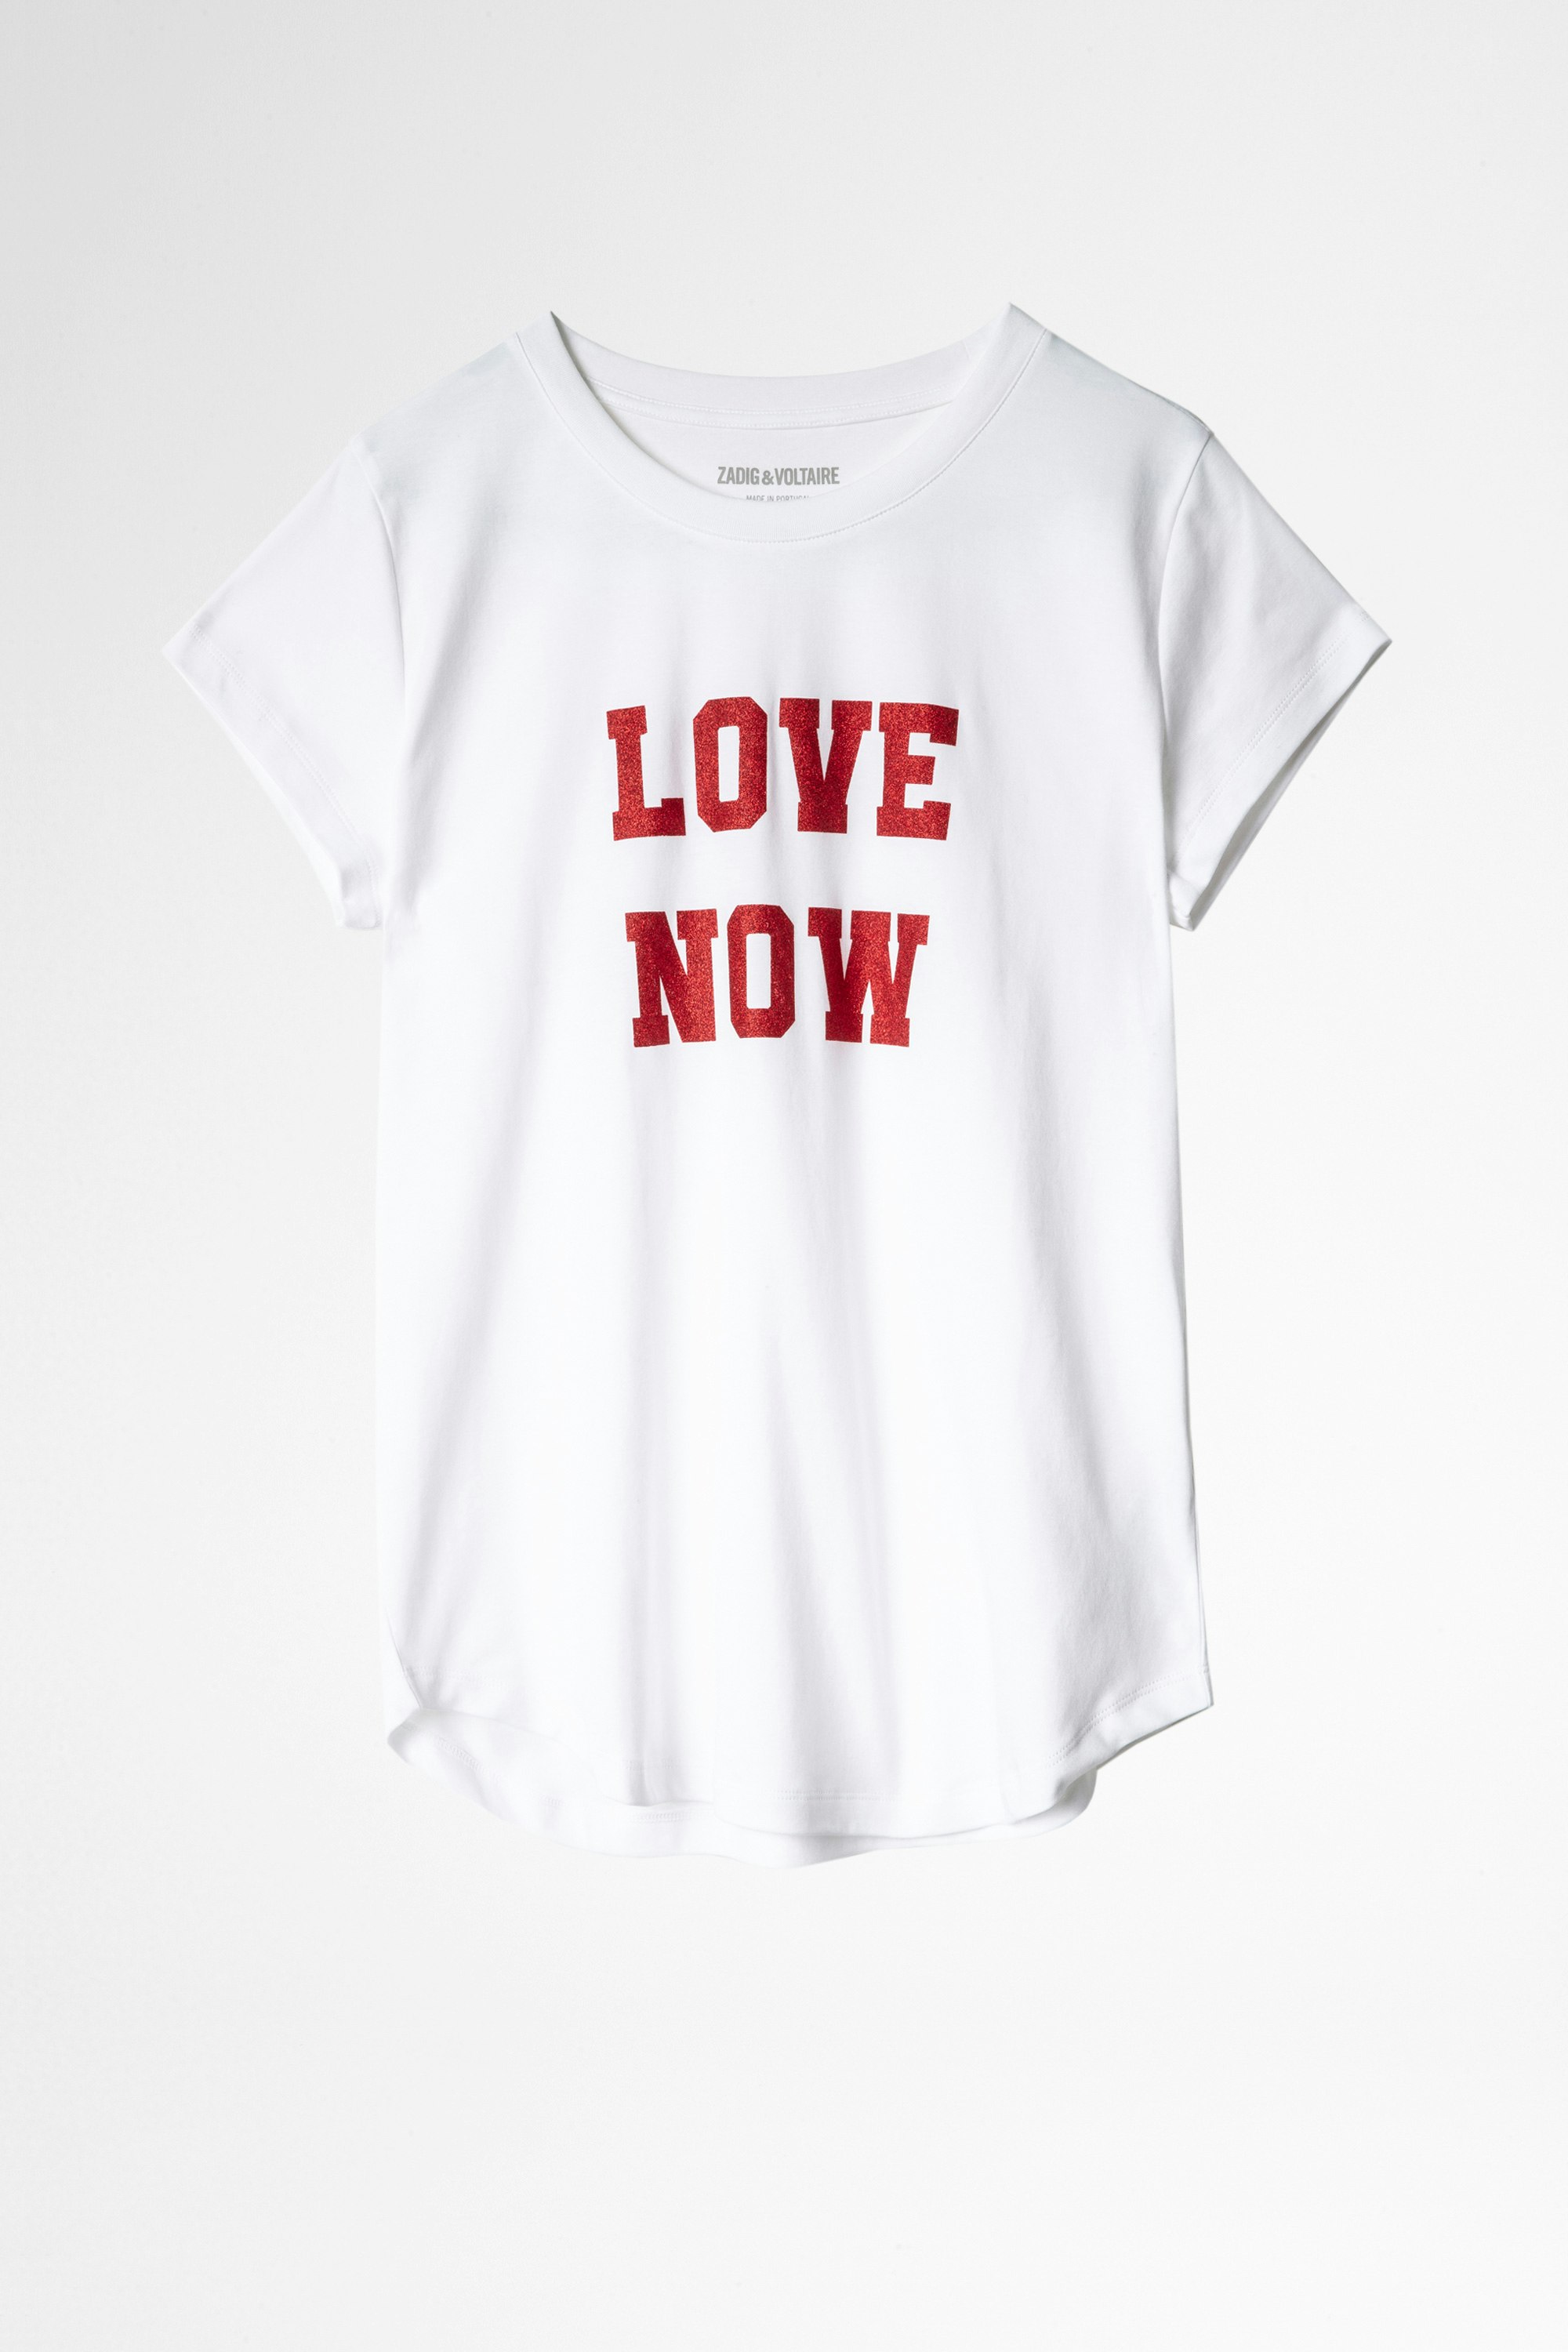 Camiseta Woop Love Now Camiseta de mujer de algodón blanco Love Now